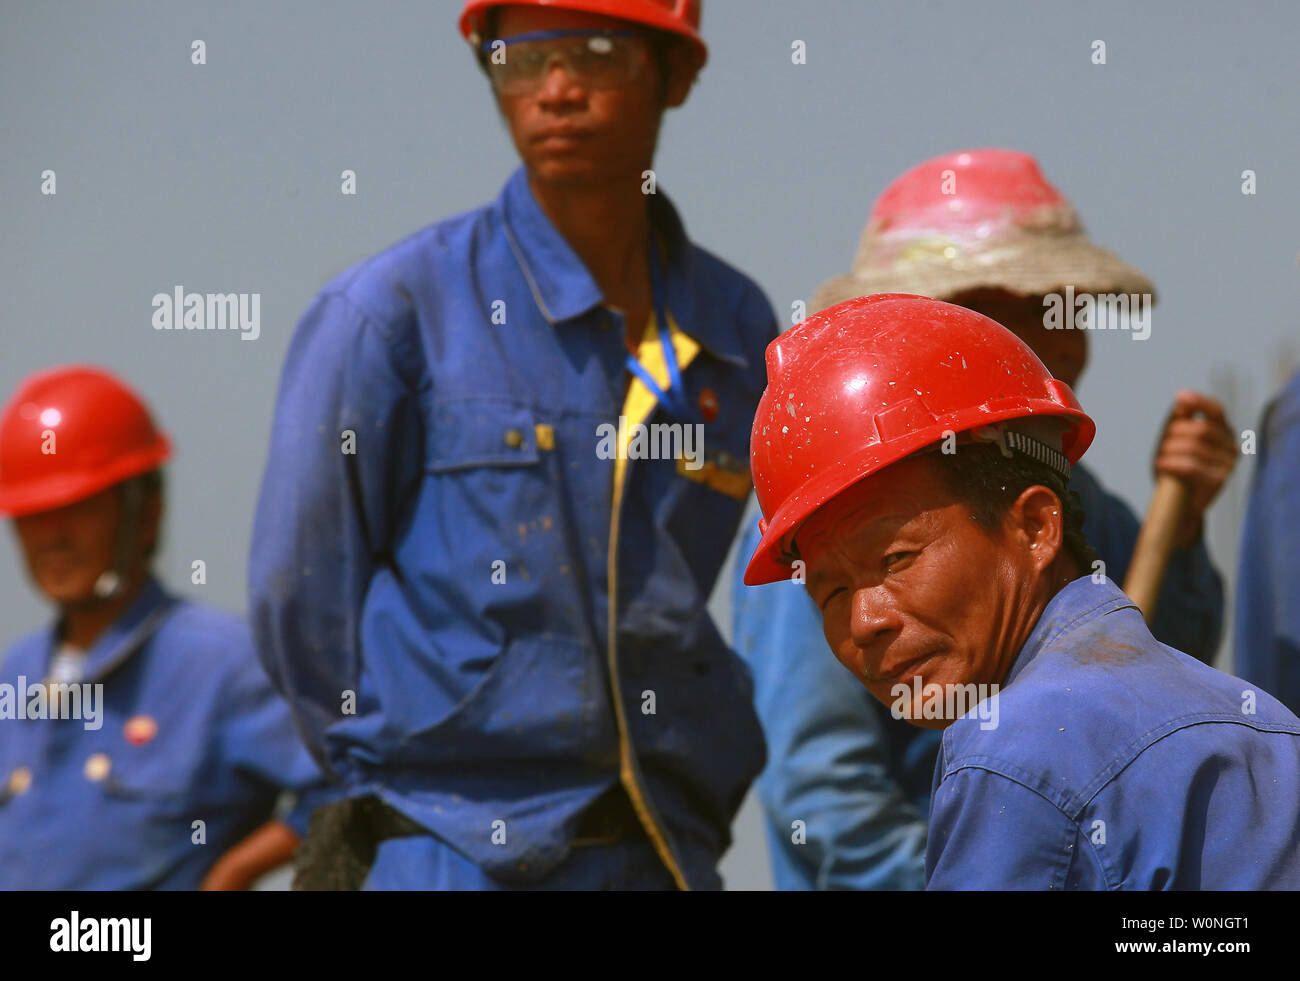 Chinesische Arbeiter machen Sie eine Pause in der Nähe von Kraftstoff Außenlager und eine tiefe Wasser flüssig gas-Anlage in der Still-Unterkonstruktion Jailan Port, eine große umfassende Hafen Industrie Zone, in Zhuhai, einer größeren Stadt am Pearl River in der südchinesischen Provinz Guangdong liegt am 26. Oktober 2013. Jailan port ist ein Setup der Schwer- und chemischen Industrie konzentrierte sich hauptsächlich auf die Herstellung von und zu einer bedeutenden petrochemischen und der Ausgangspunkt für die Auslagerung und Raffinesse. BP und Shell haben große Bereiche im Hafen zone eröffnet. Ressourcen, insbesondere Energie, hat oberste Priorität für Kinn werden Stockfoto